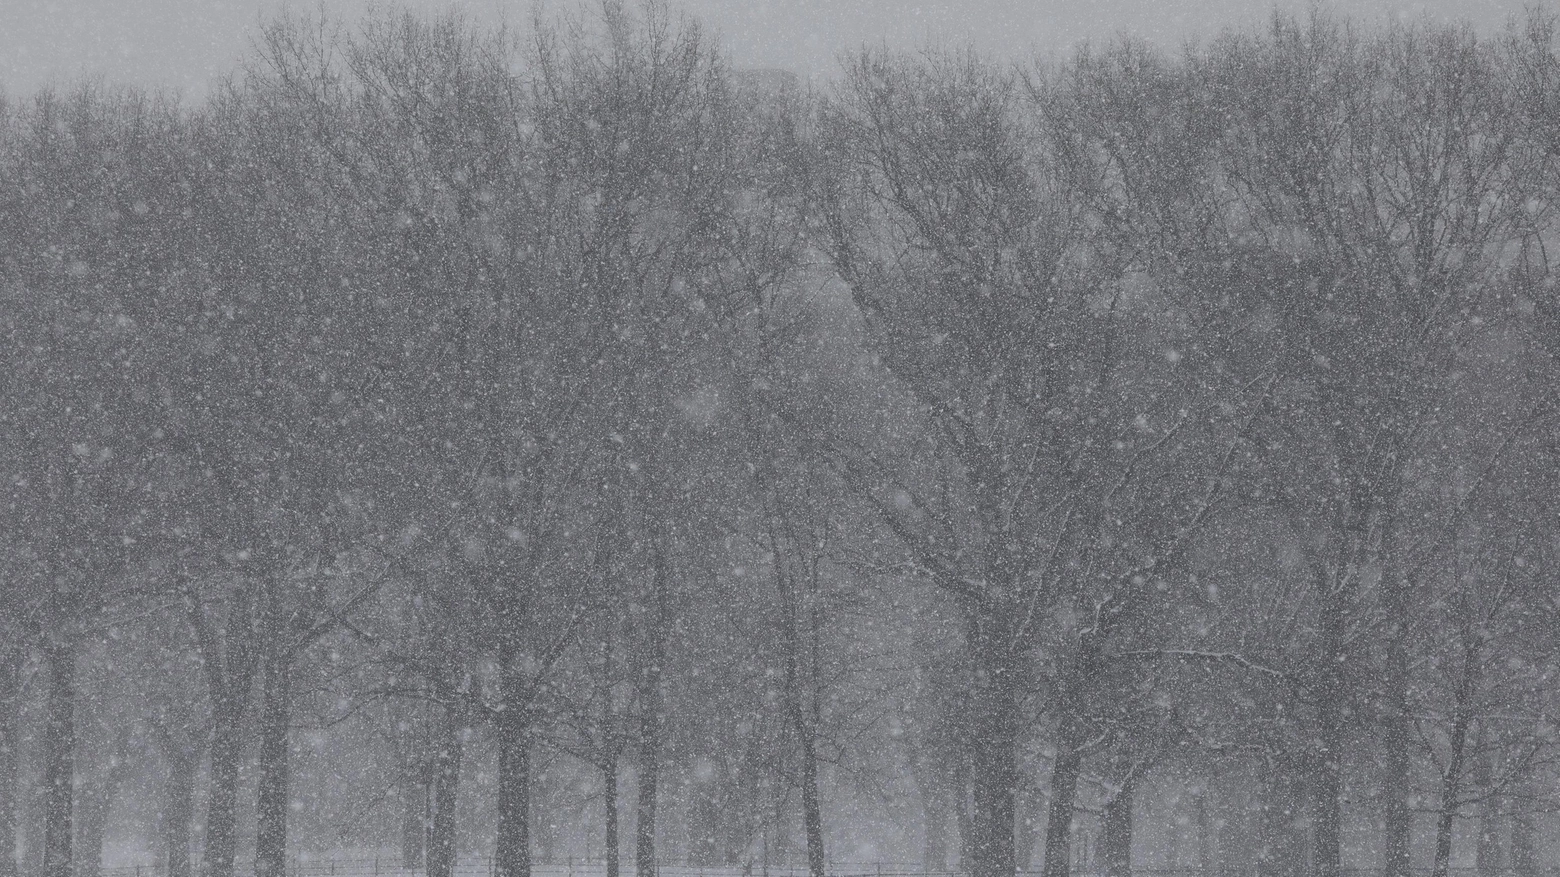 Previsioni meteo, torna la neve. Fiocchi bianchi in un'immagine d'archivio (foto Ansa)